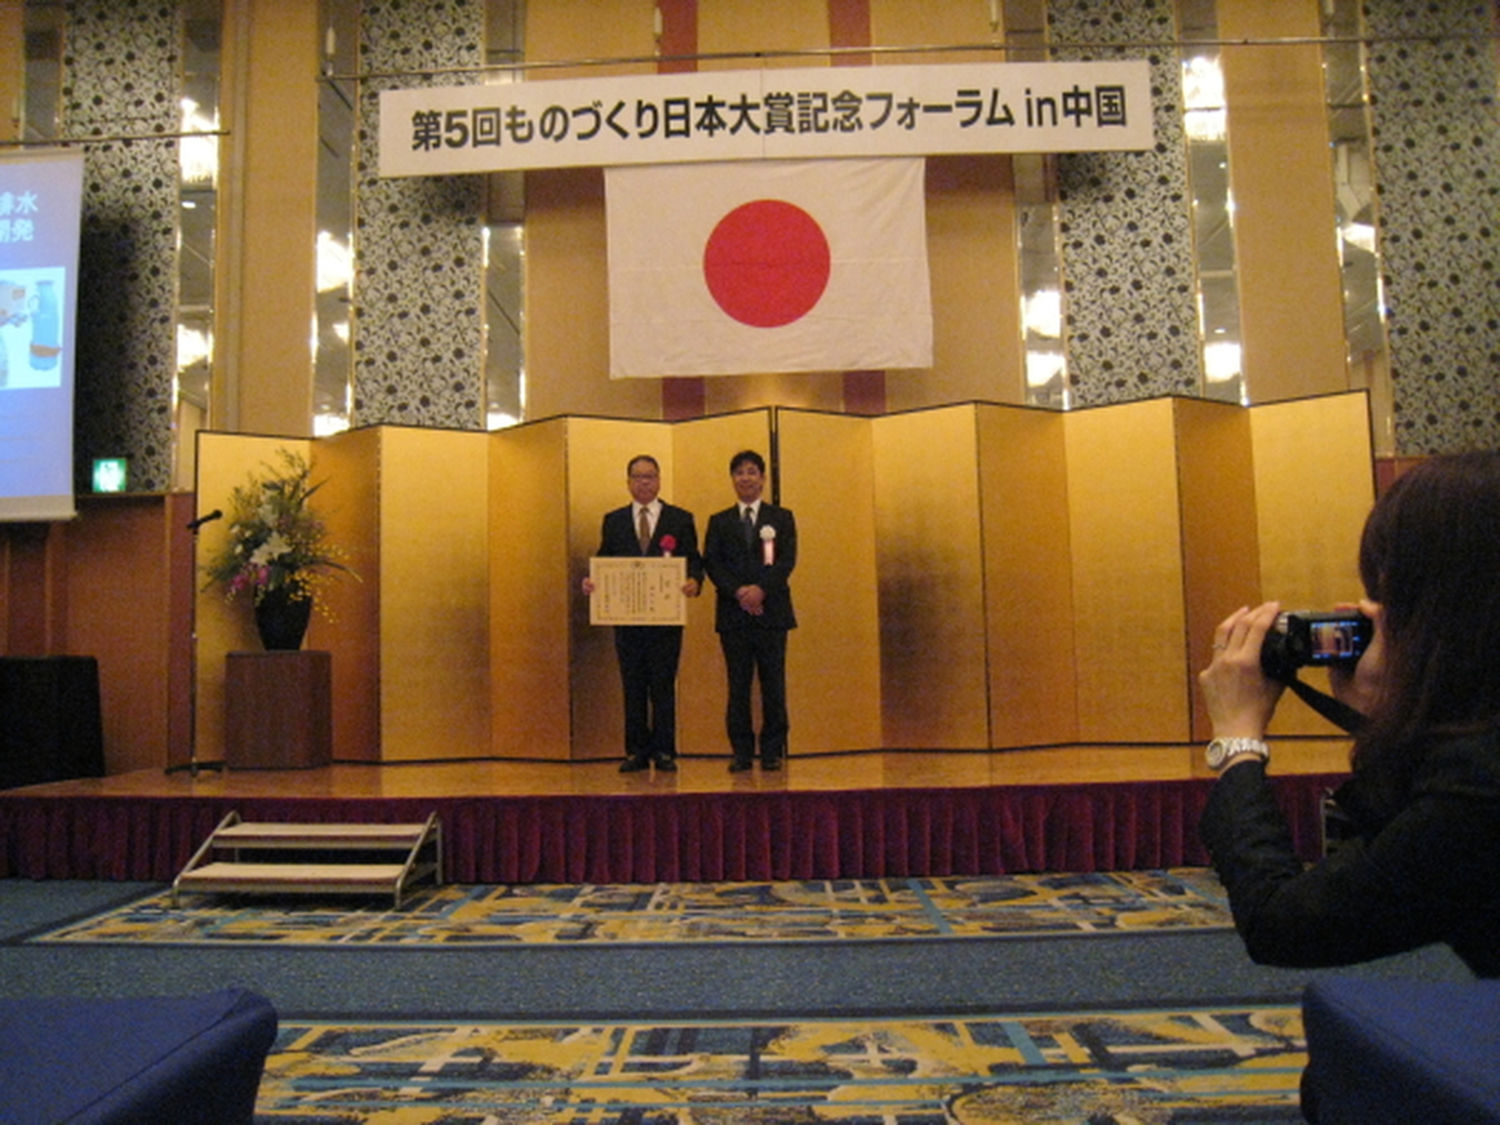 １０月 パスカル君 経済産業省主催第５回ものづくり日本大賞 中国経済産業局長賞を受賞